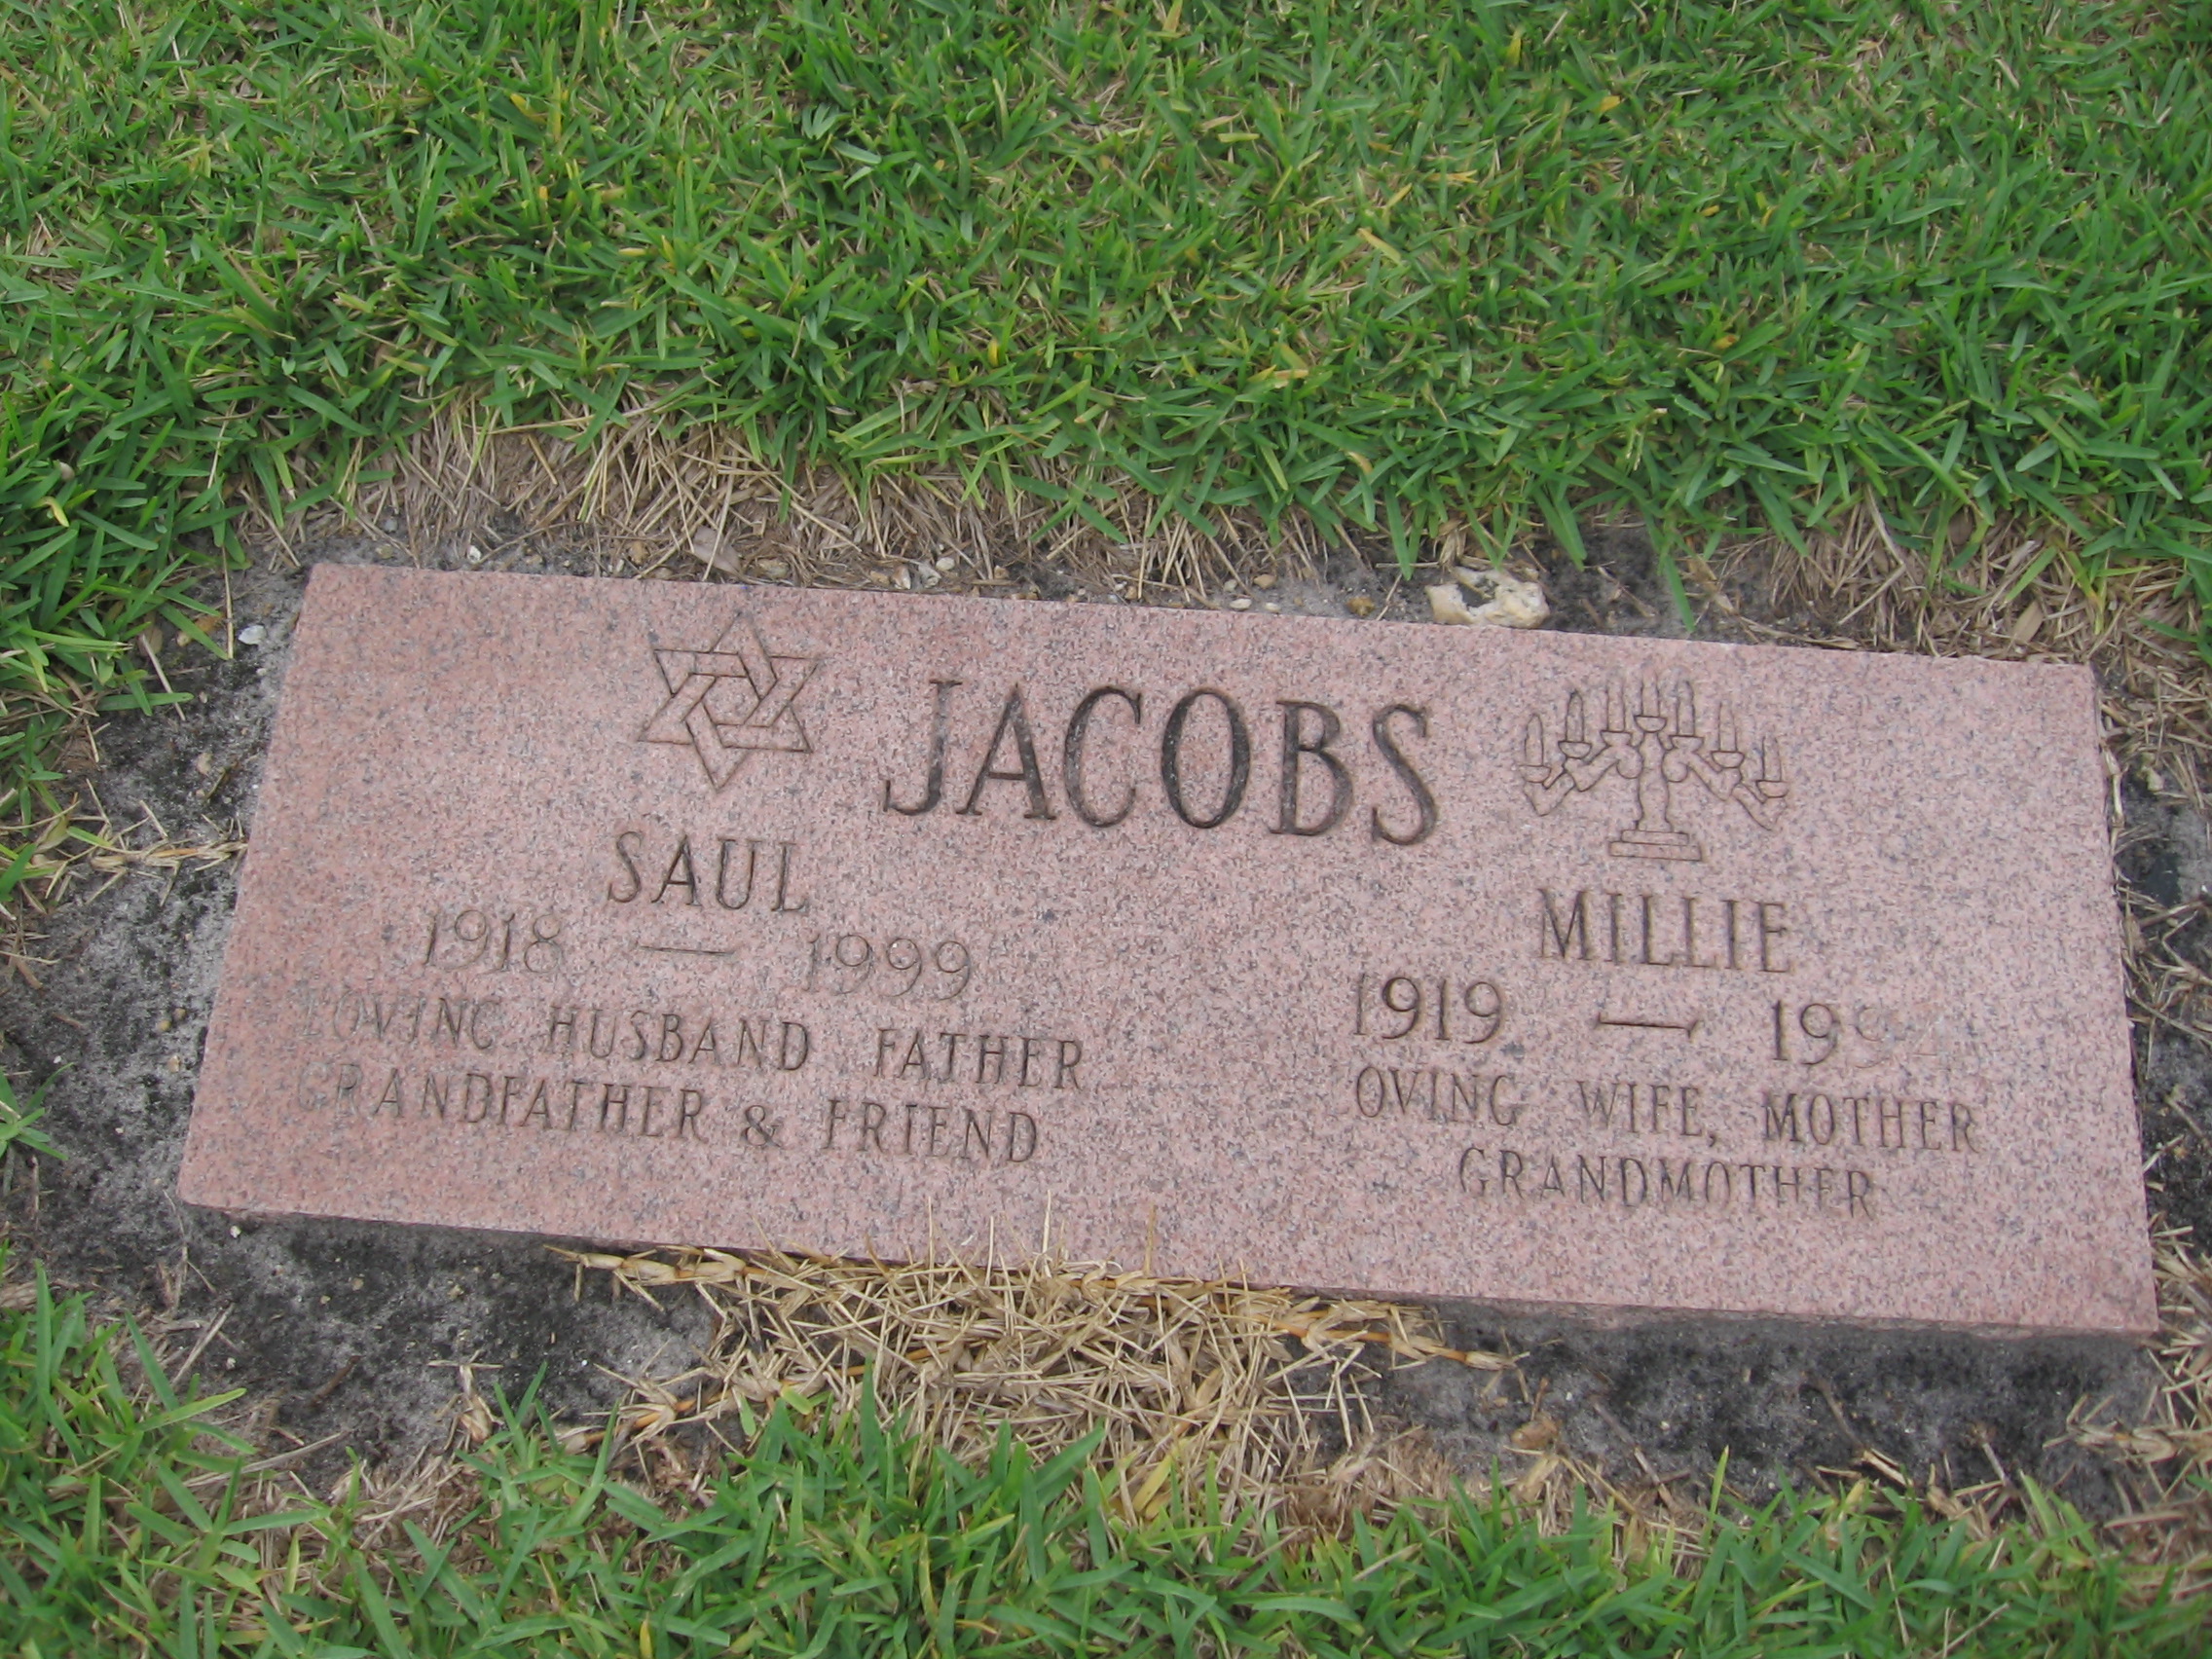 Saul Jacobs